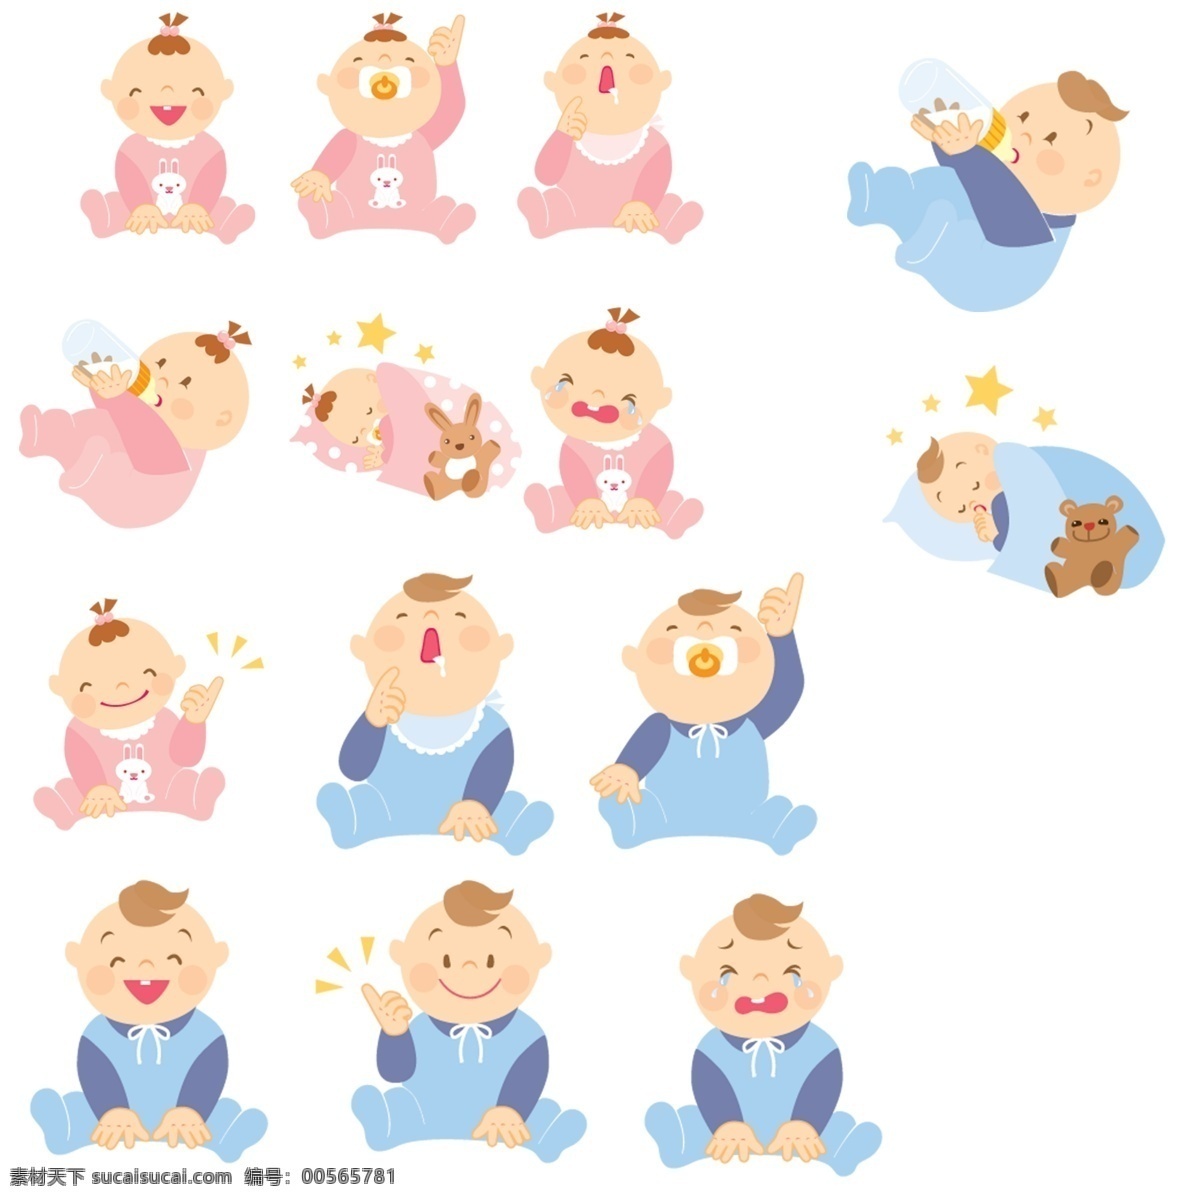 婴儿素材 宝宝 矢量 3d 婴儿 可爱 风格 2d动漫卡通 男宝宝 女宝宝 分层